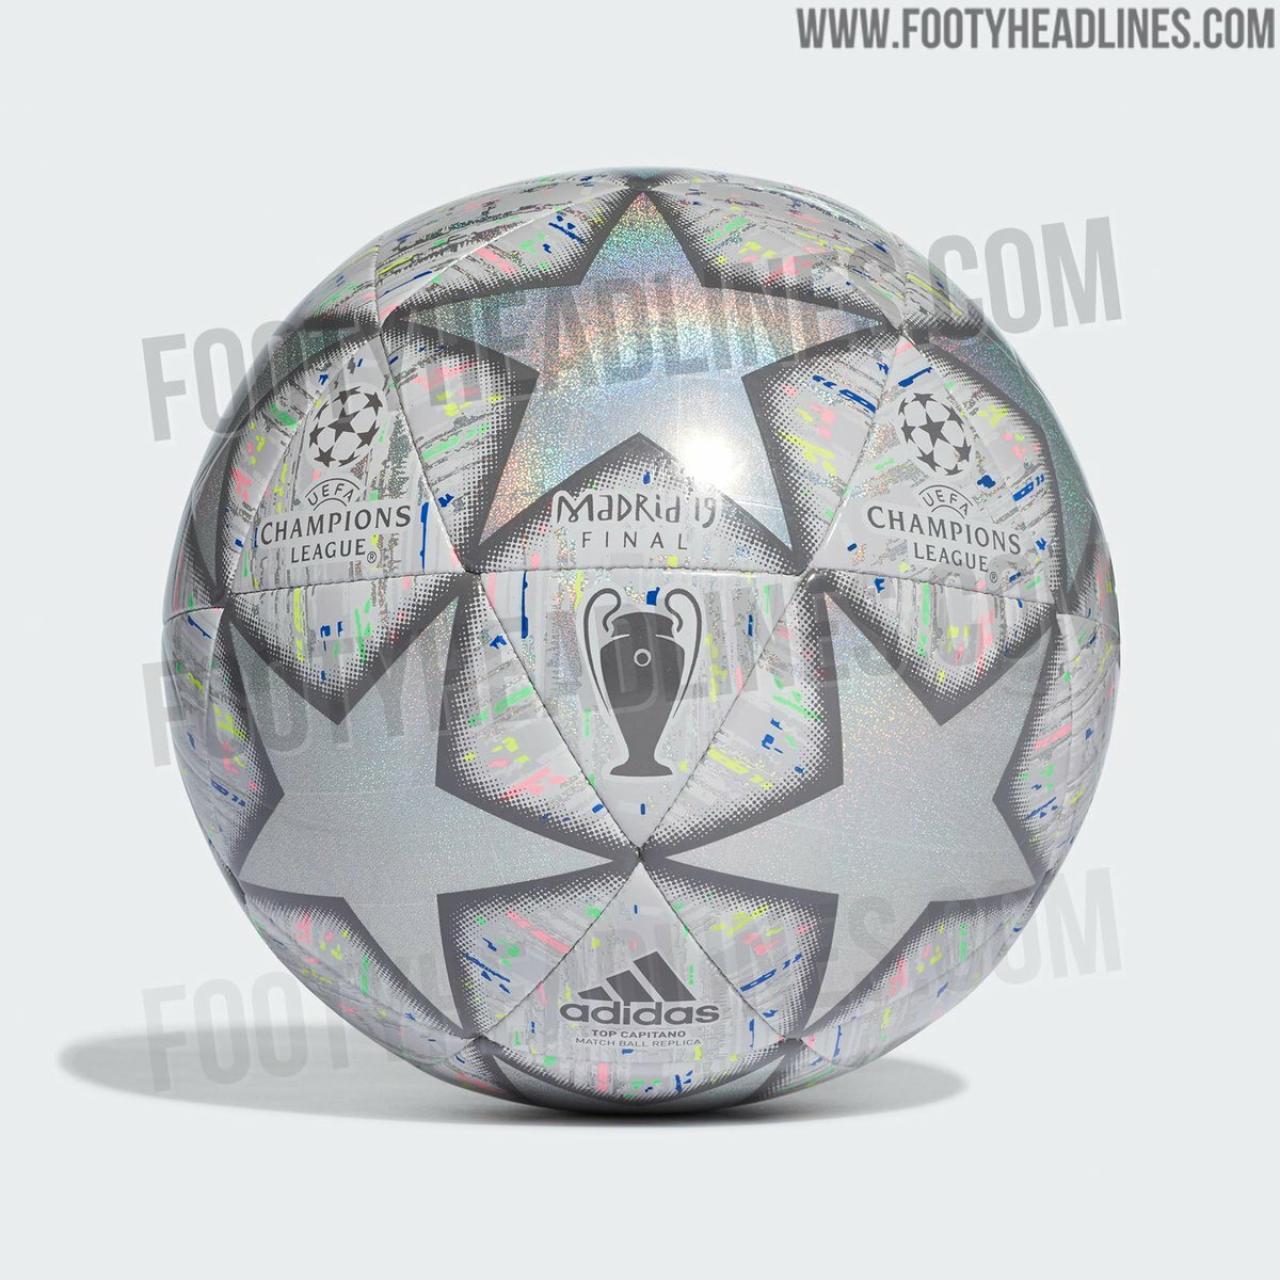 El balón de la final de la Champions League 2019. Foto: footyheadlines.com